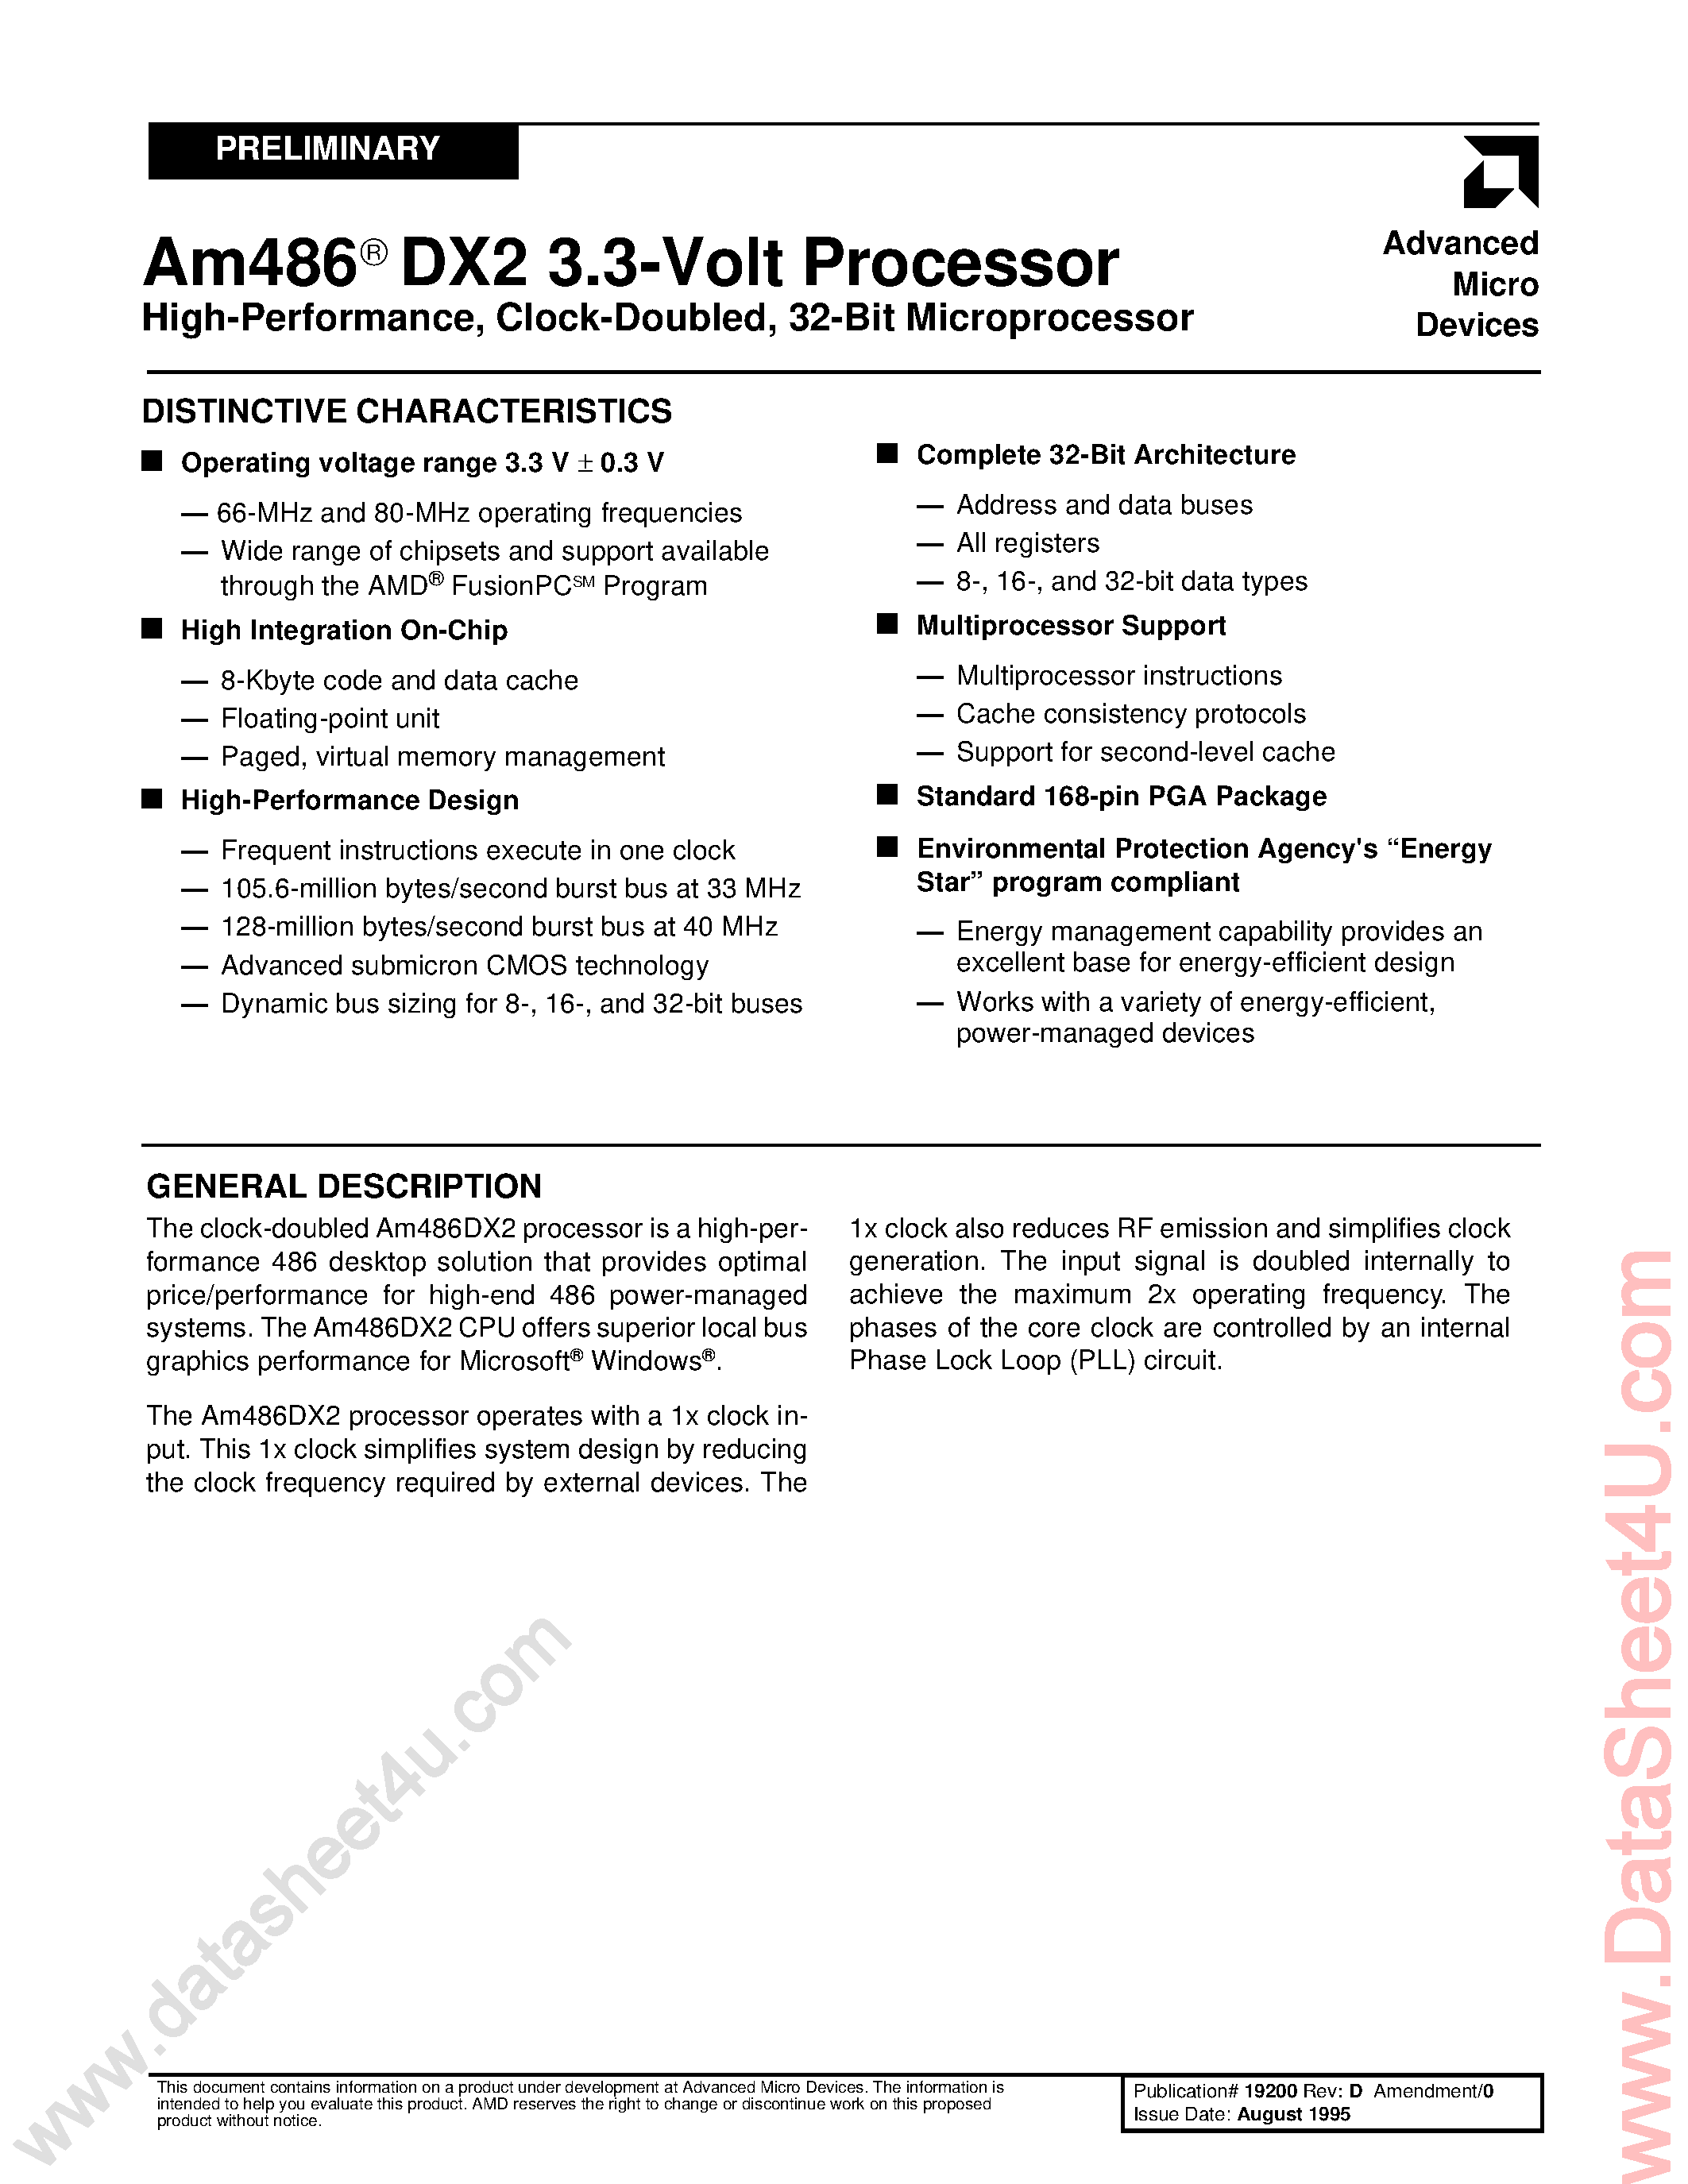 Даташит AM486DX2 - 3.3V / Clock-Doubled / 32-Bit Microprocessor страница 1